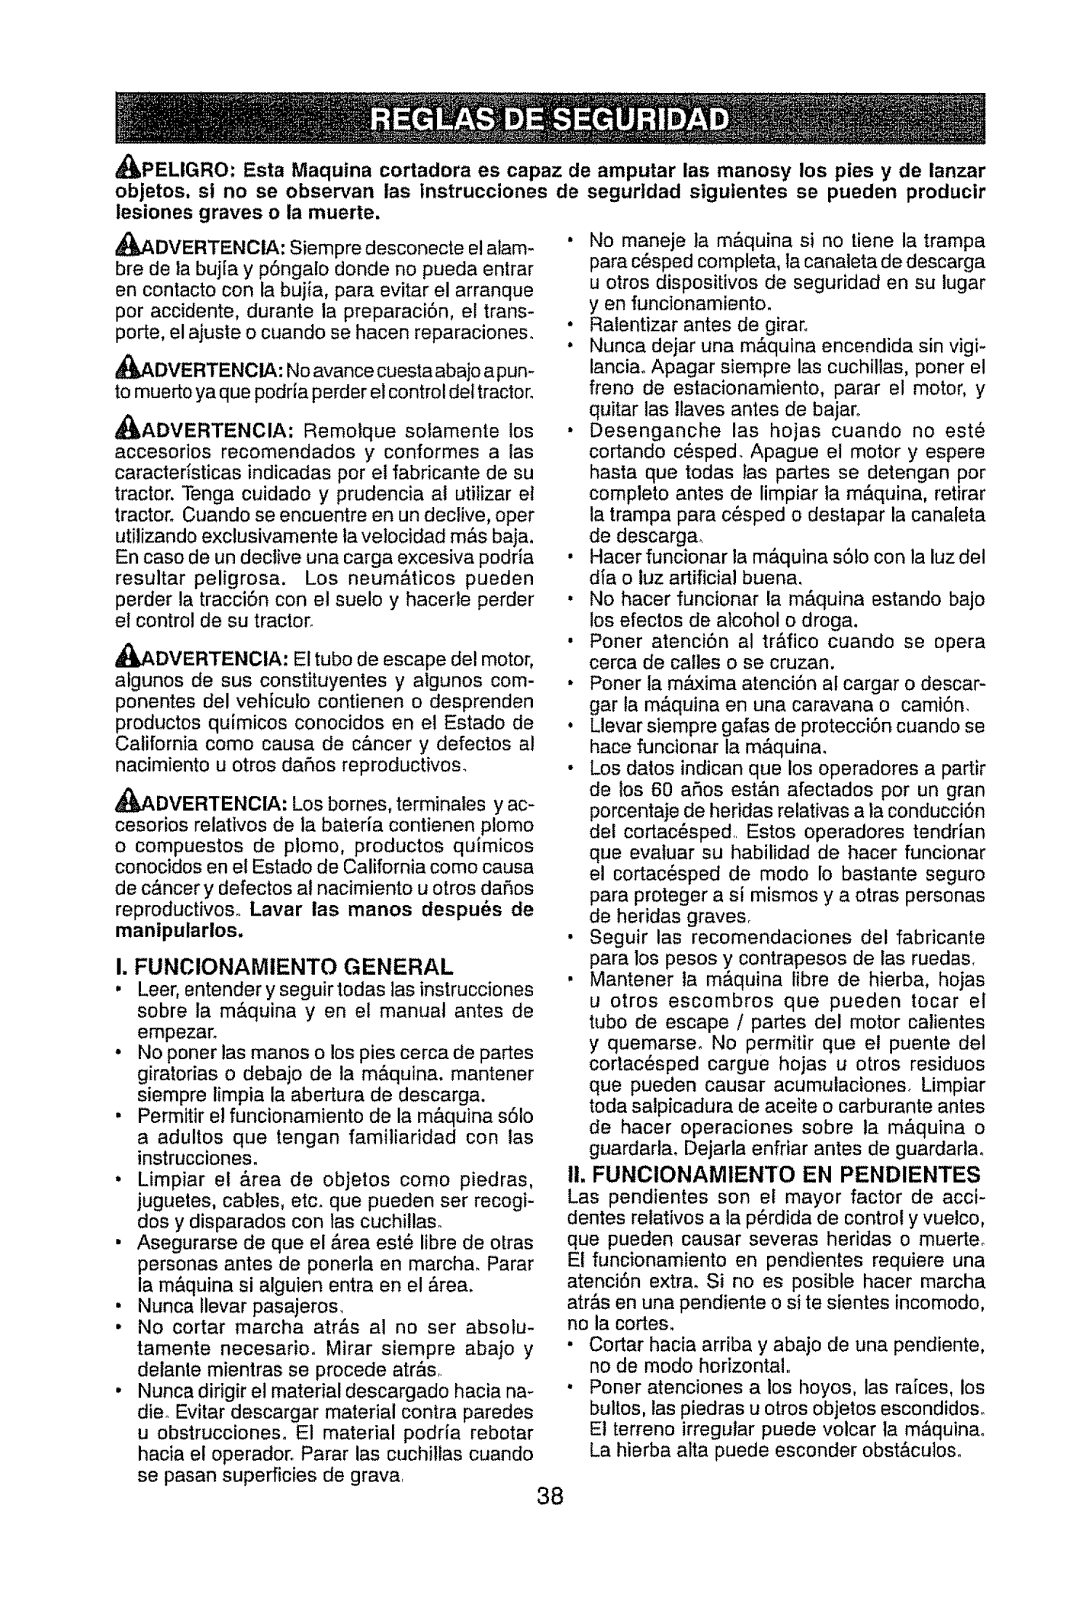 Craftsman 917.289470 manual I. Funcionamiento General, Ii. FUNCIONAMIENTO EN PENDIENTES 